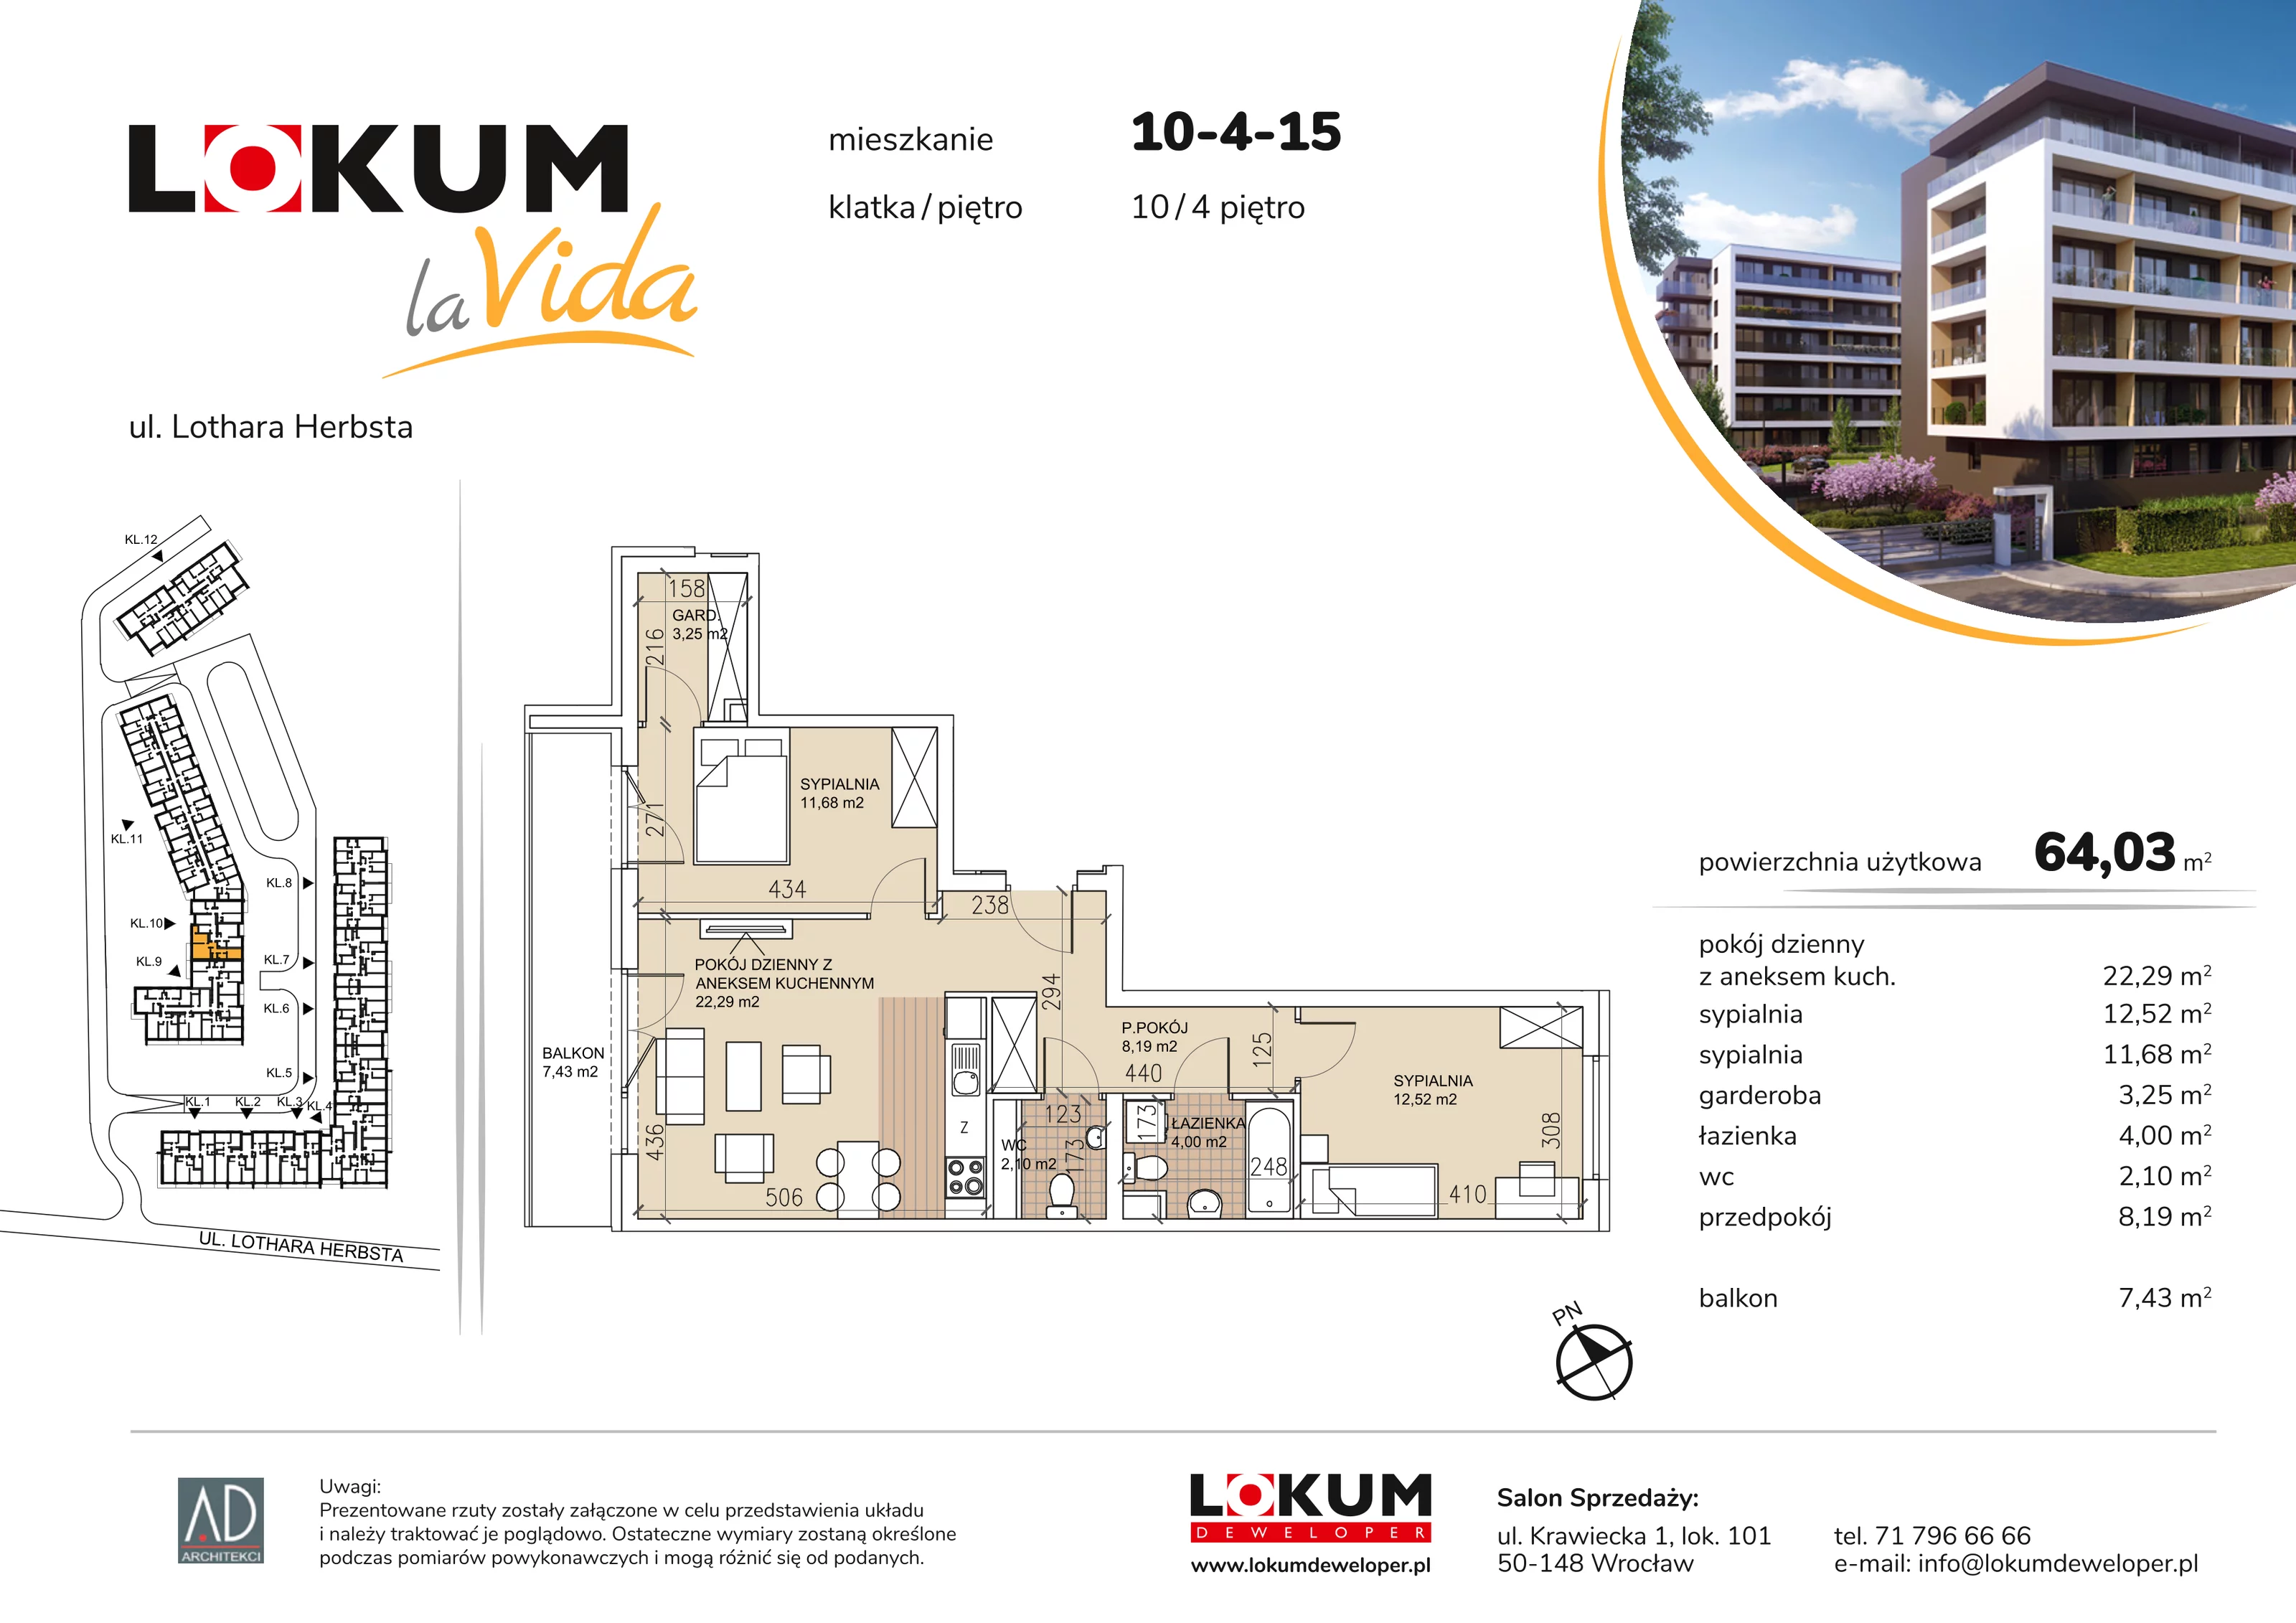 Mieszkanie 64,03 m², piętro 4, oferta nr 10-4-15, Lokum la Vida, Wrocław, Sołtysowice, ul. Lothara Herbsta